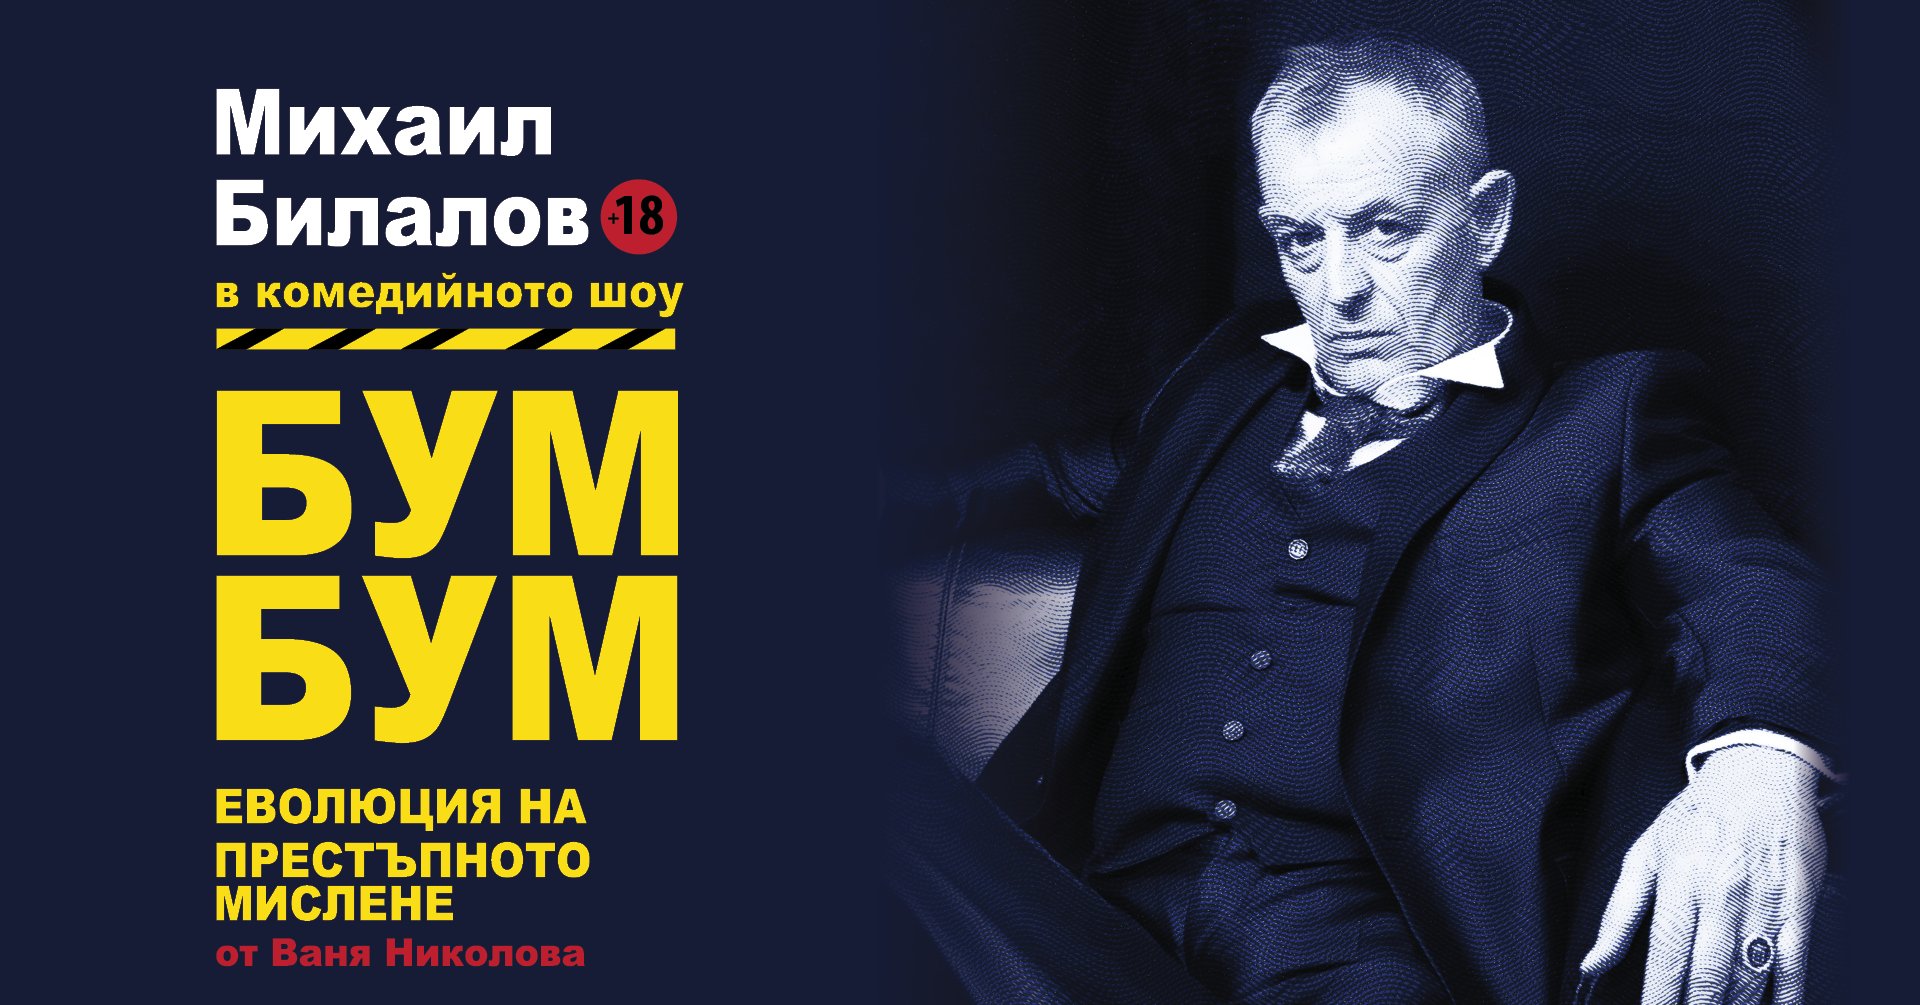 Комедиен спектакъл с Михаил Билалов ще гостува в Бургас - E-Burgas.com